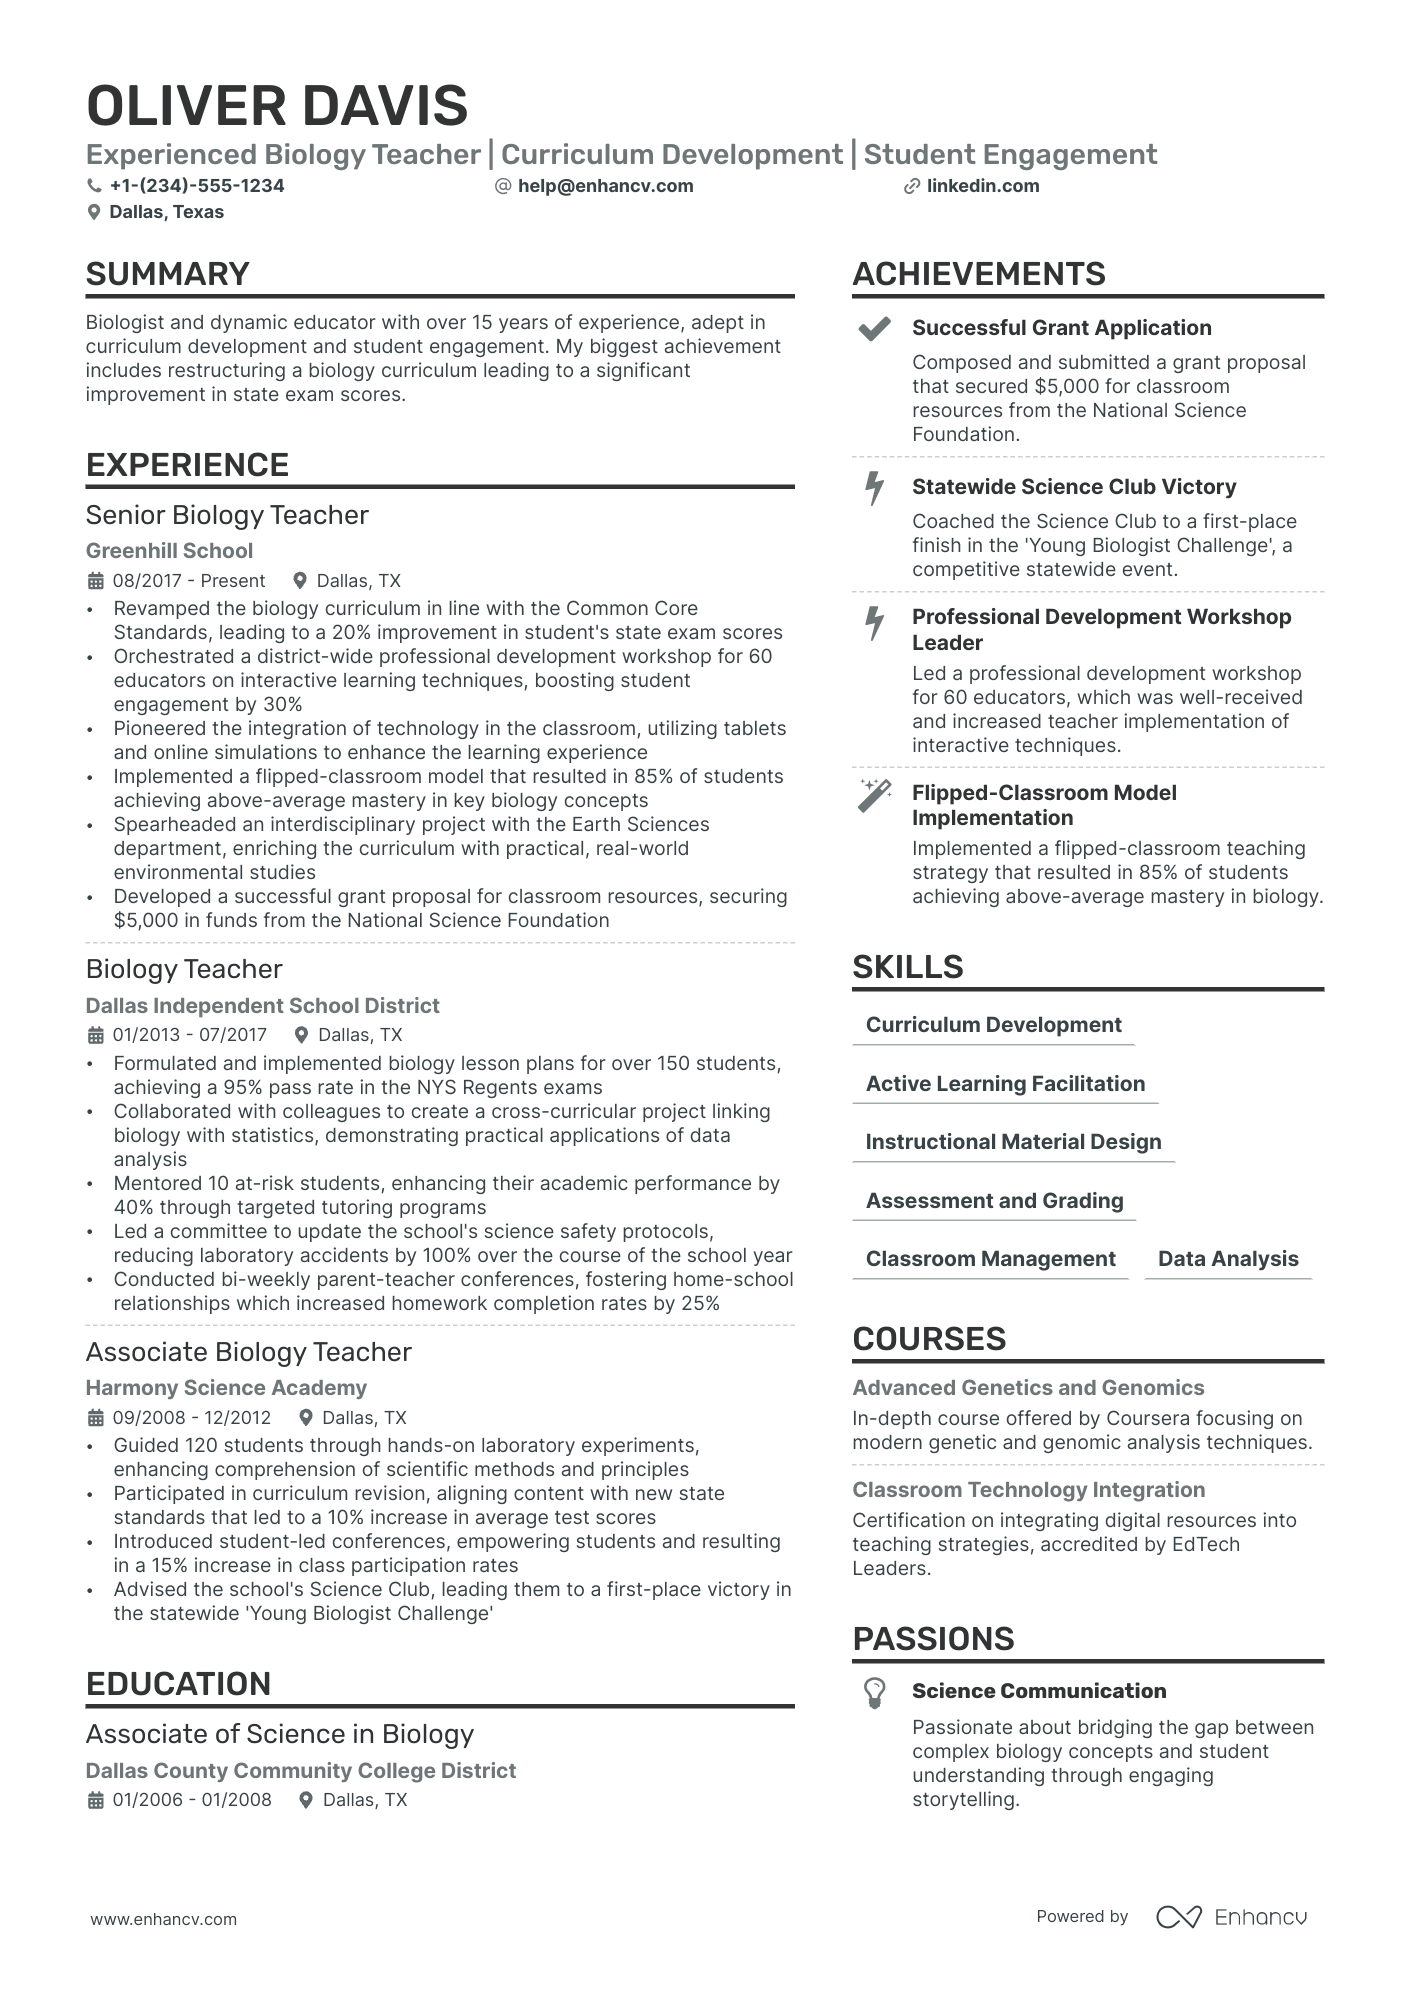 sample resume for teacher post